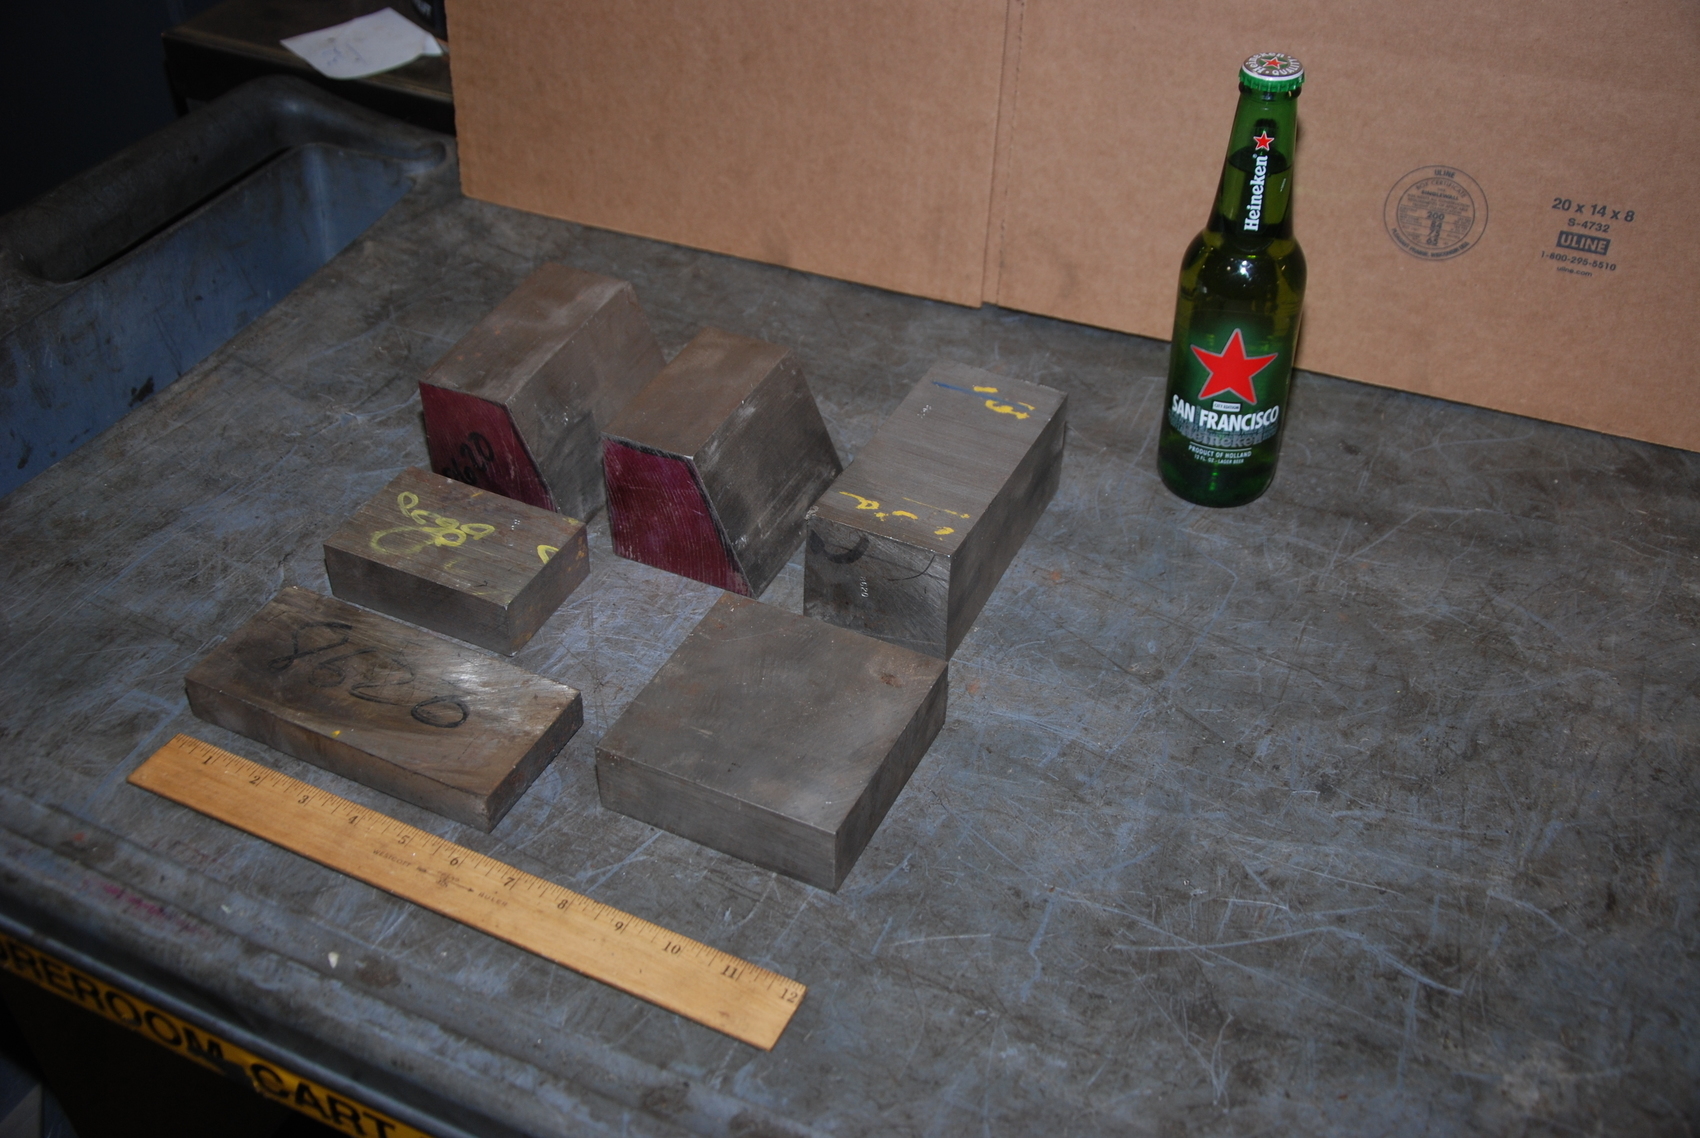 Lot of 6 8620 steel Rectangular Bars for blacksmith anvil,46 lbs